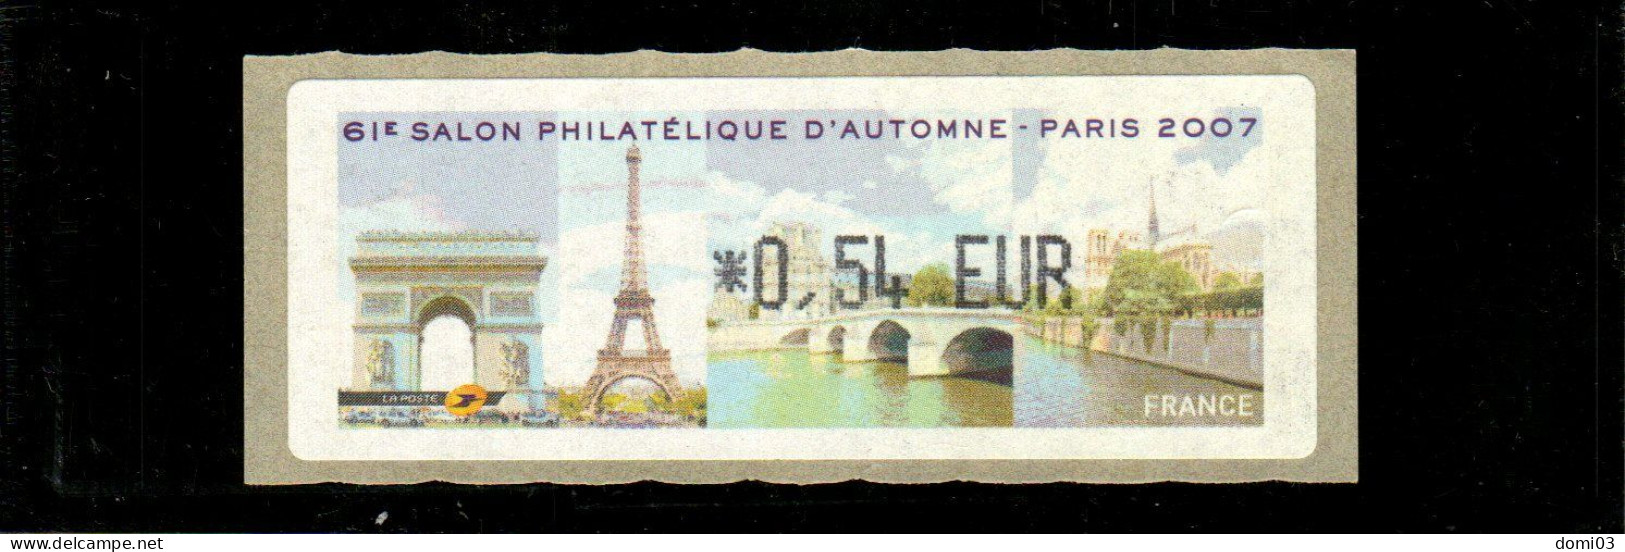 61è Salon Philatélique D'automne Paris 2007 - 1999-2009 Illustrated Franking Labels